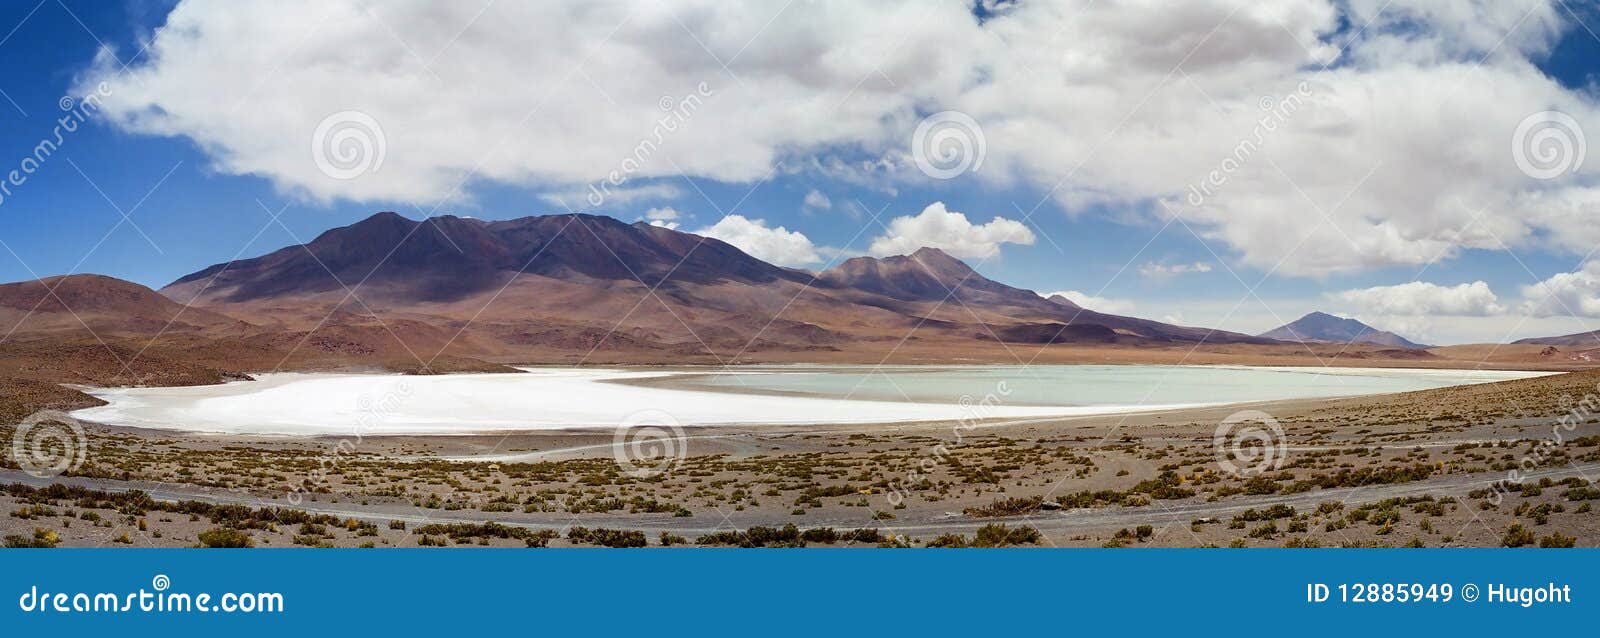 salar de uyuni laguna blanca, bolivia